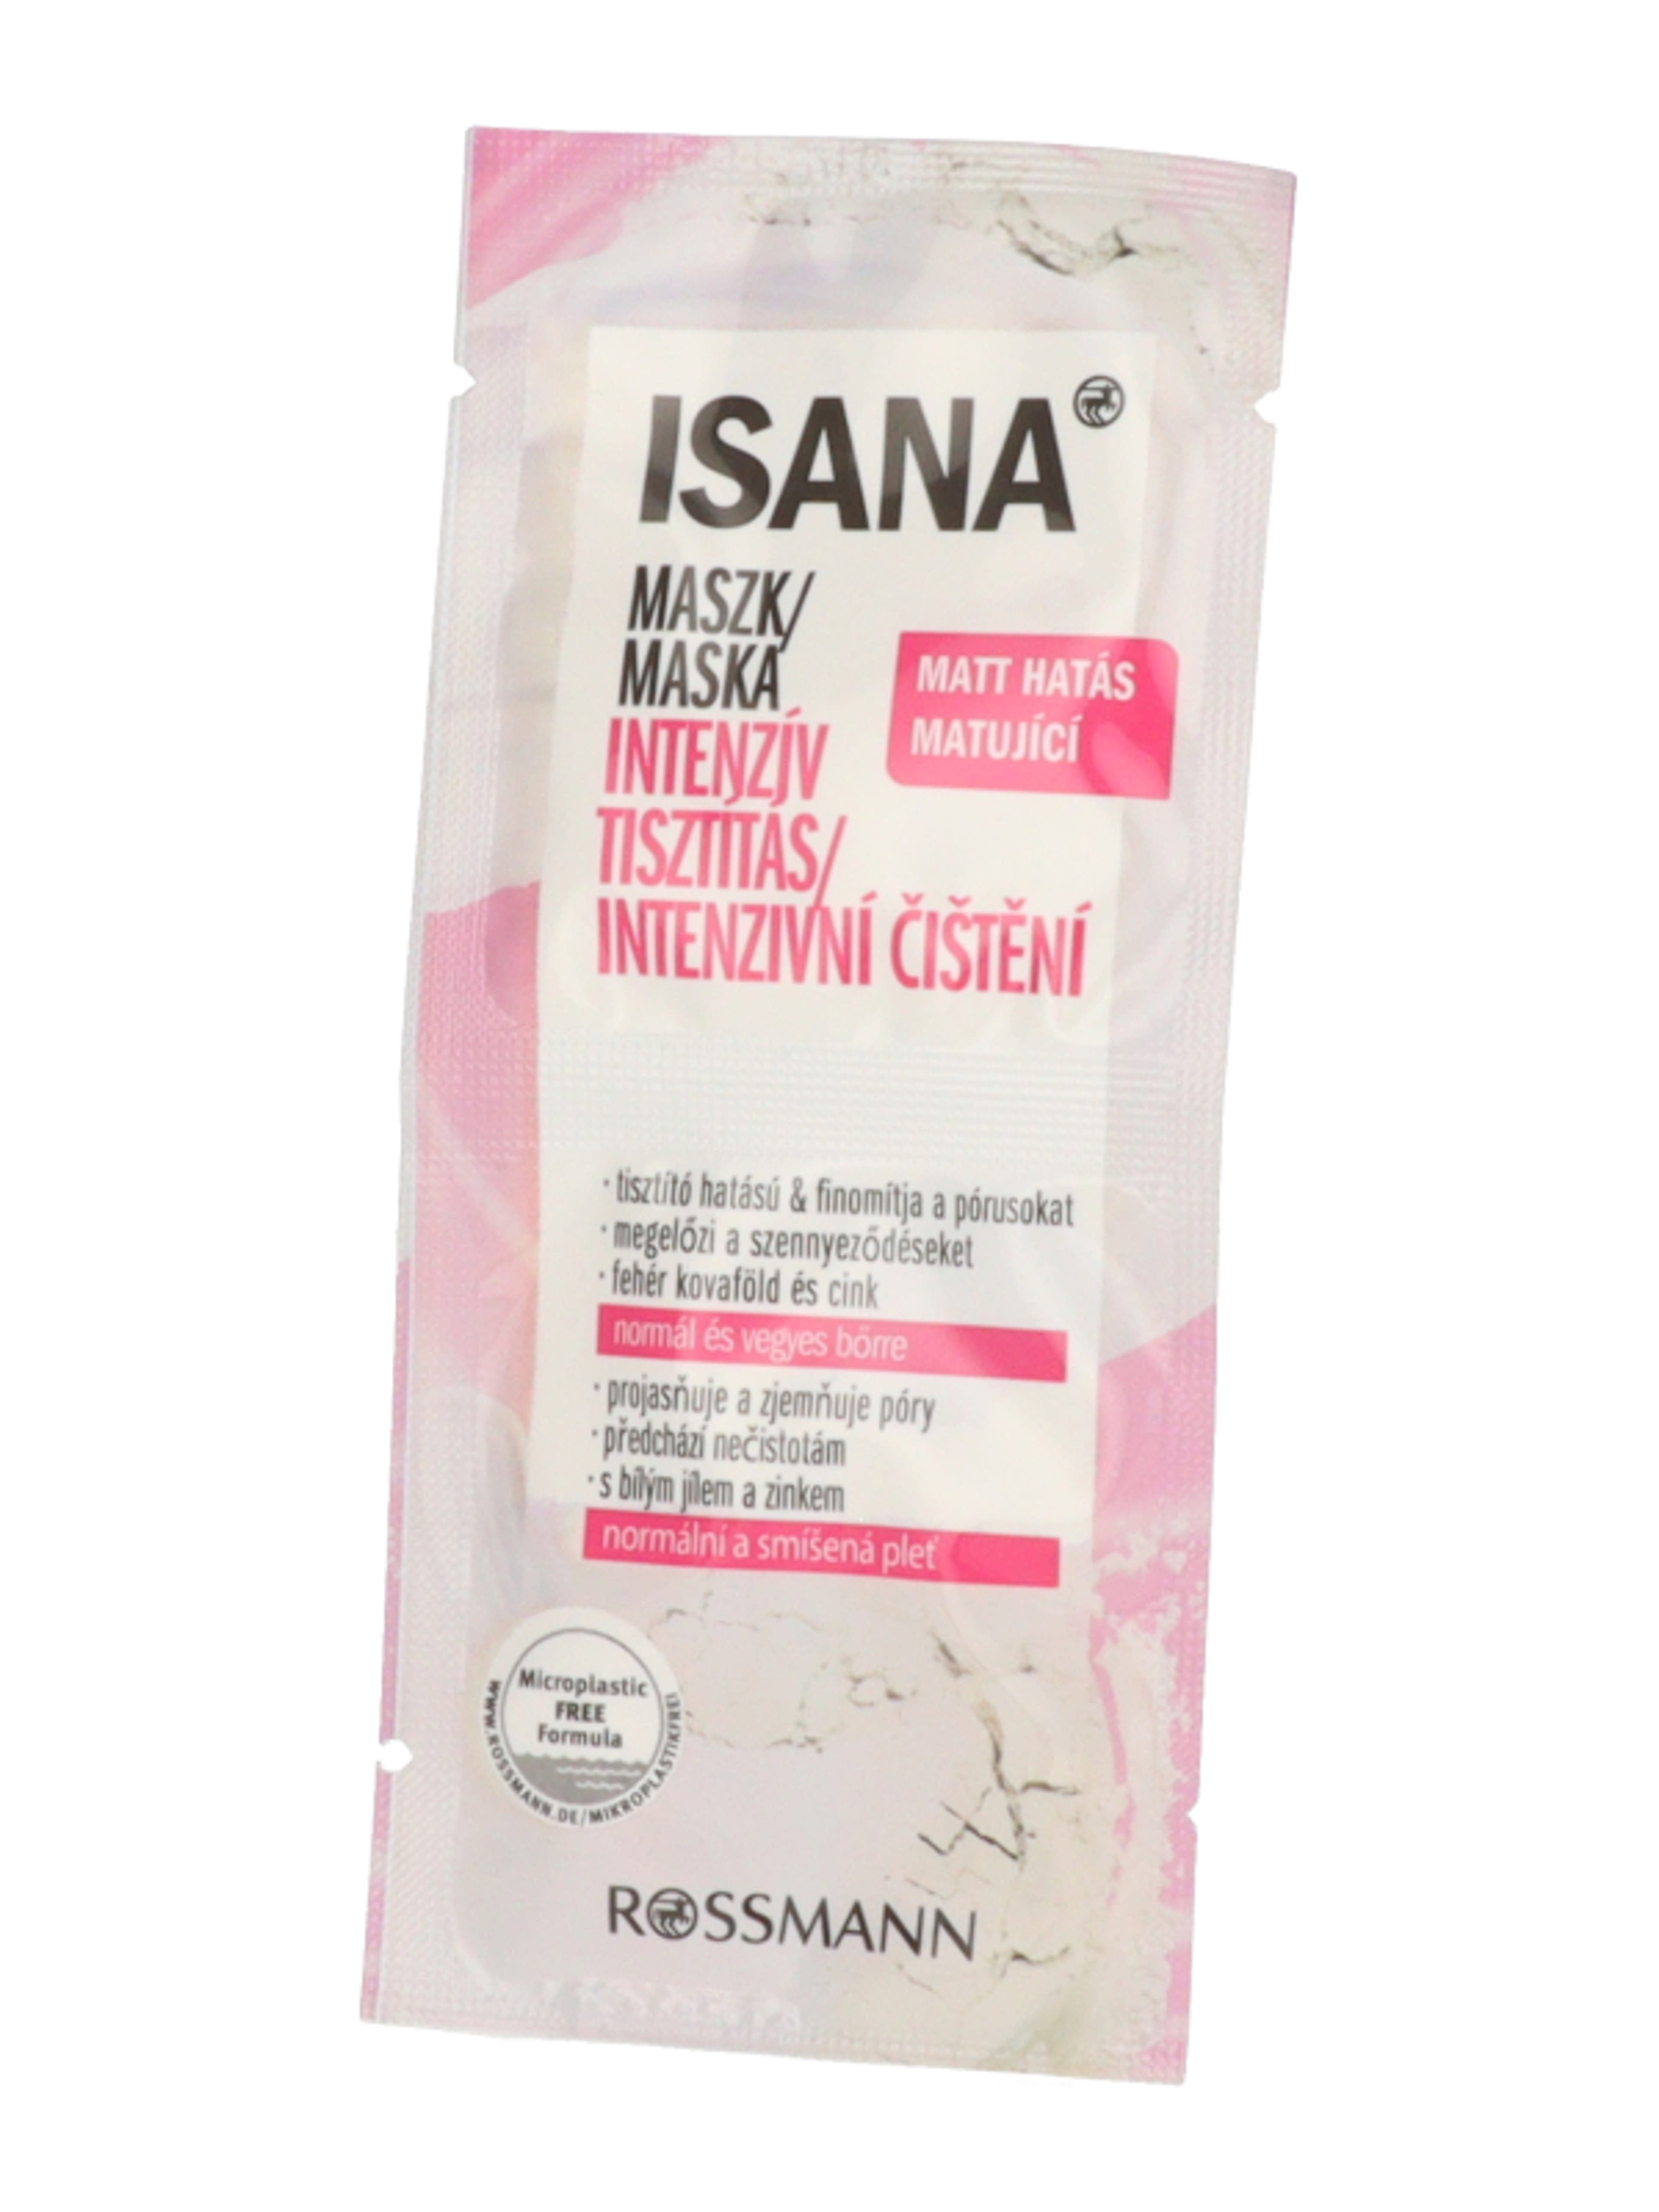 Isana Intensive tisztító maszk 2x8 ml - 16 ml-3